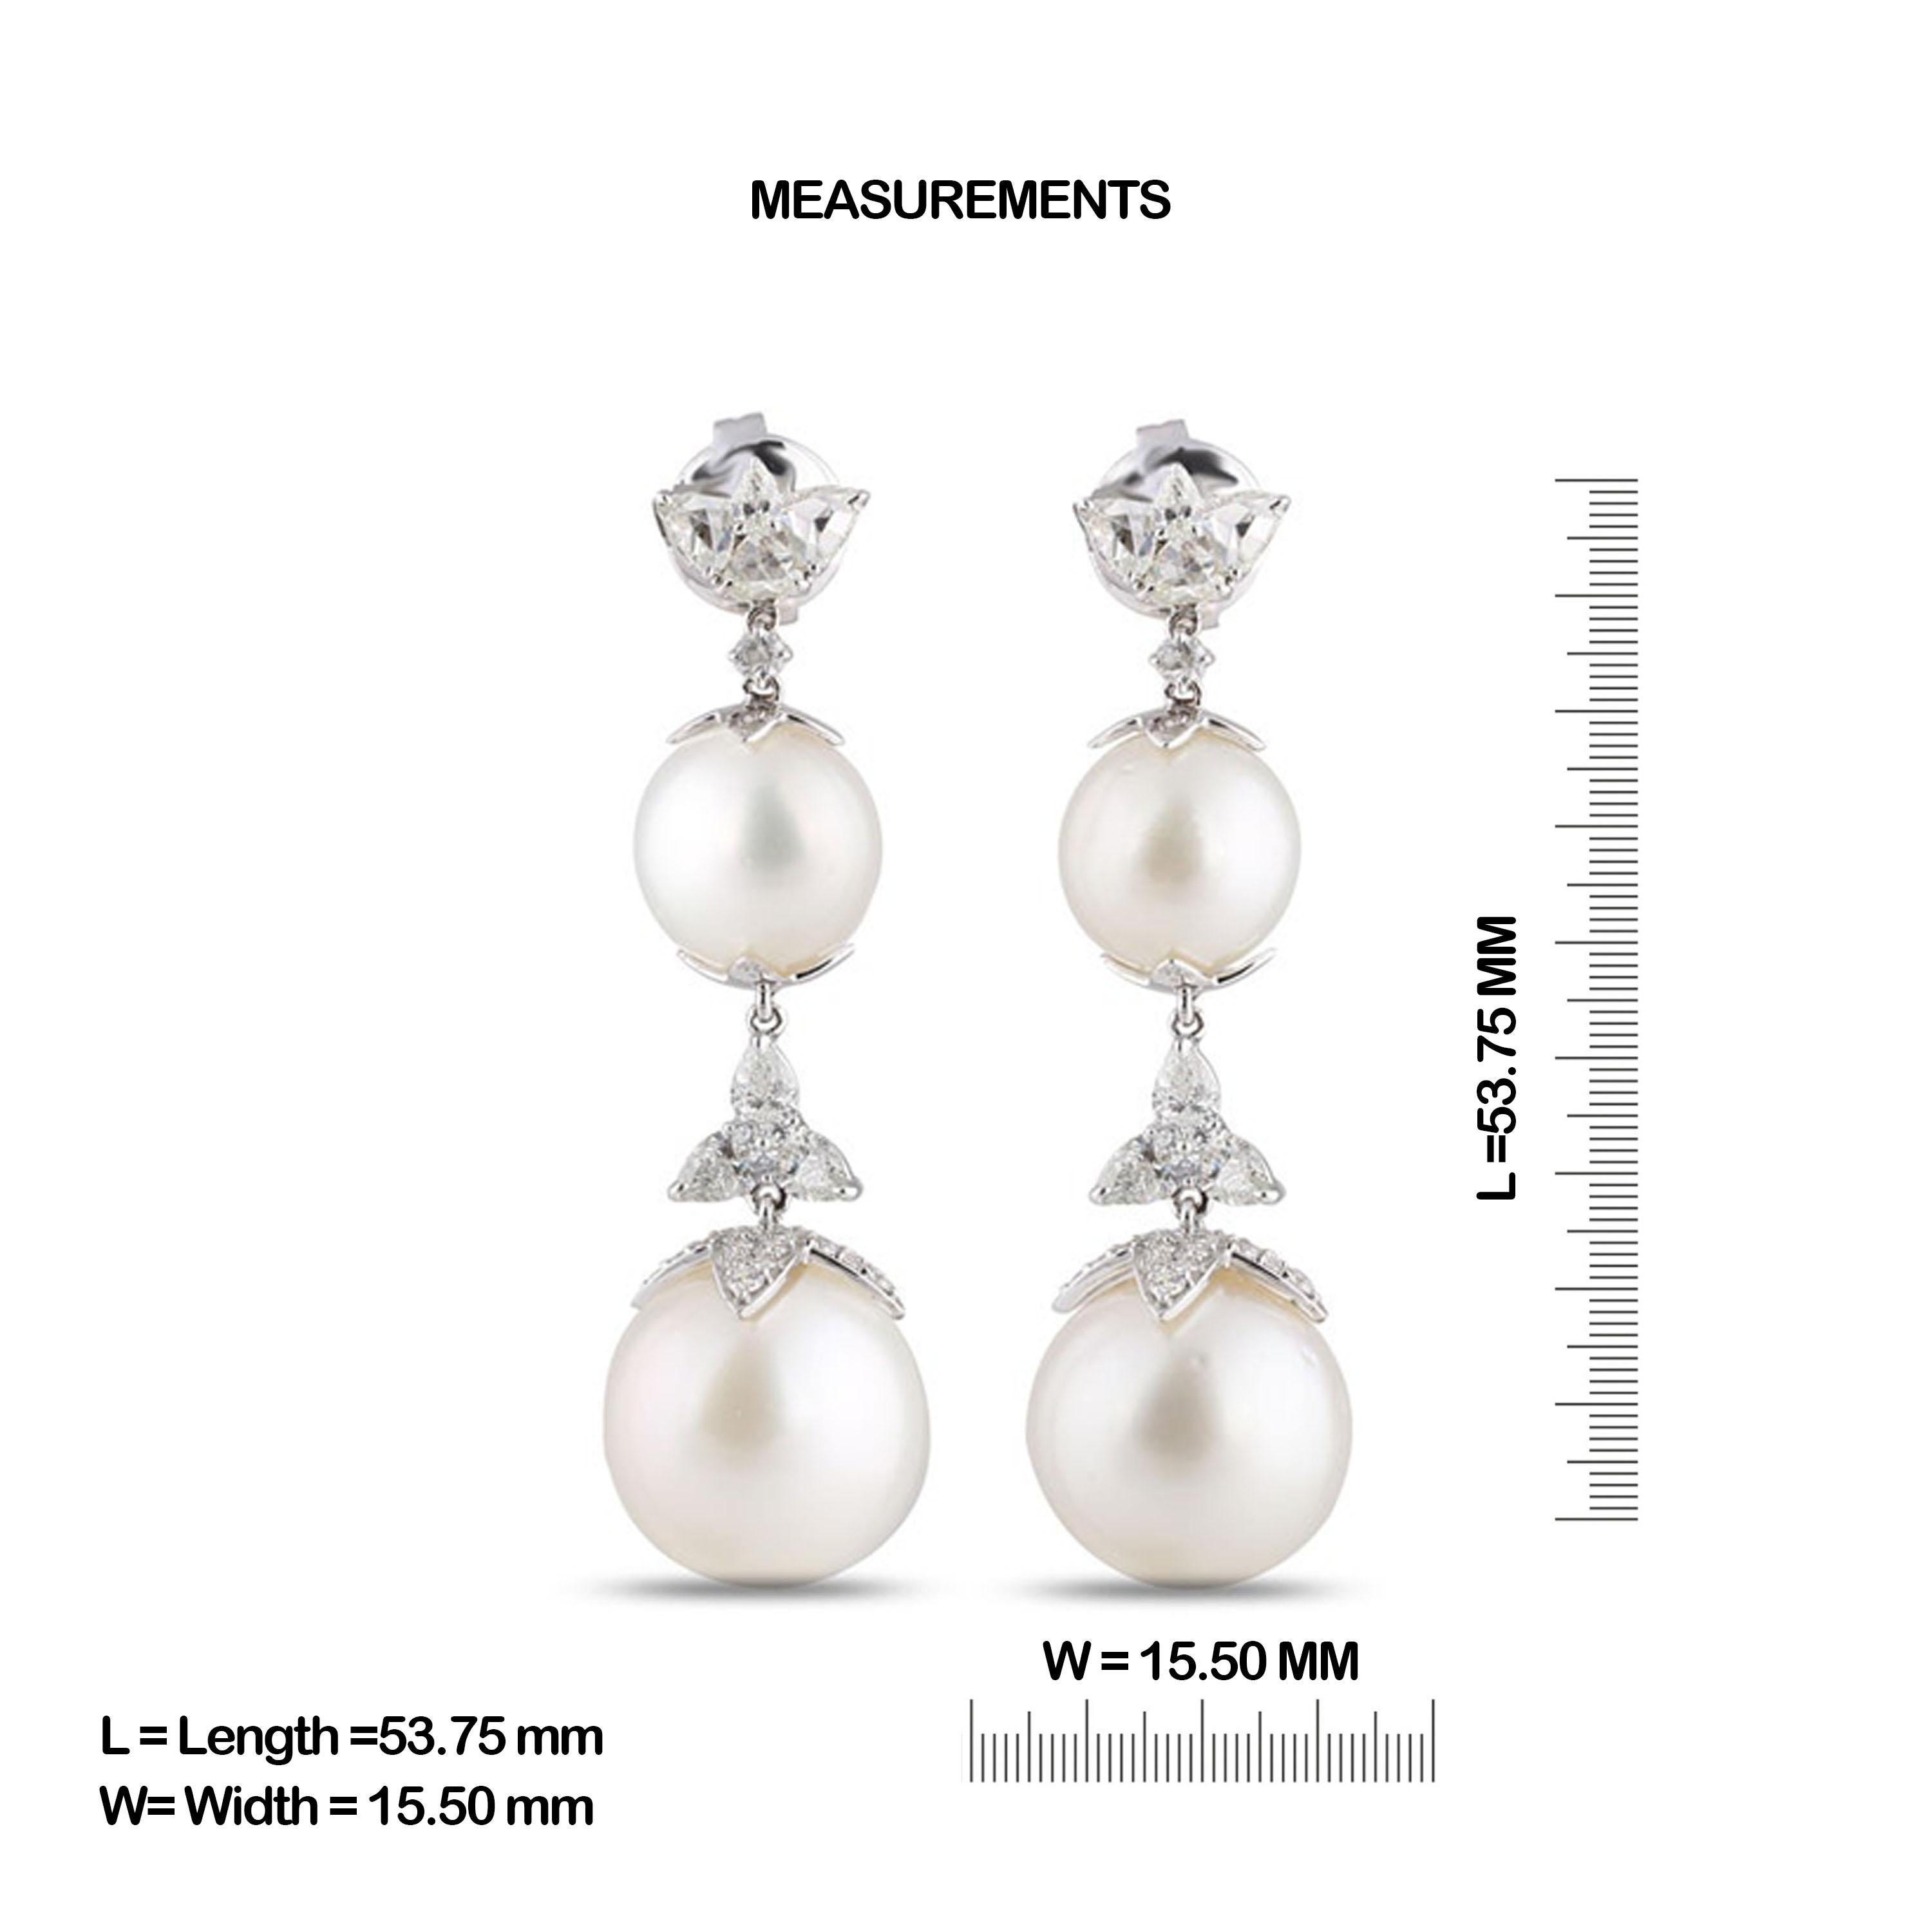 Modern Studio Rêves Diamonds and Pearls Dangling Earrings in 18 Karat Gold